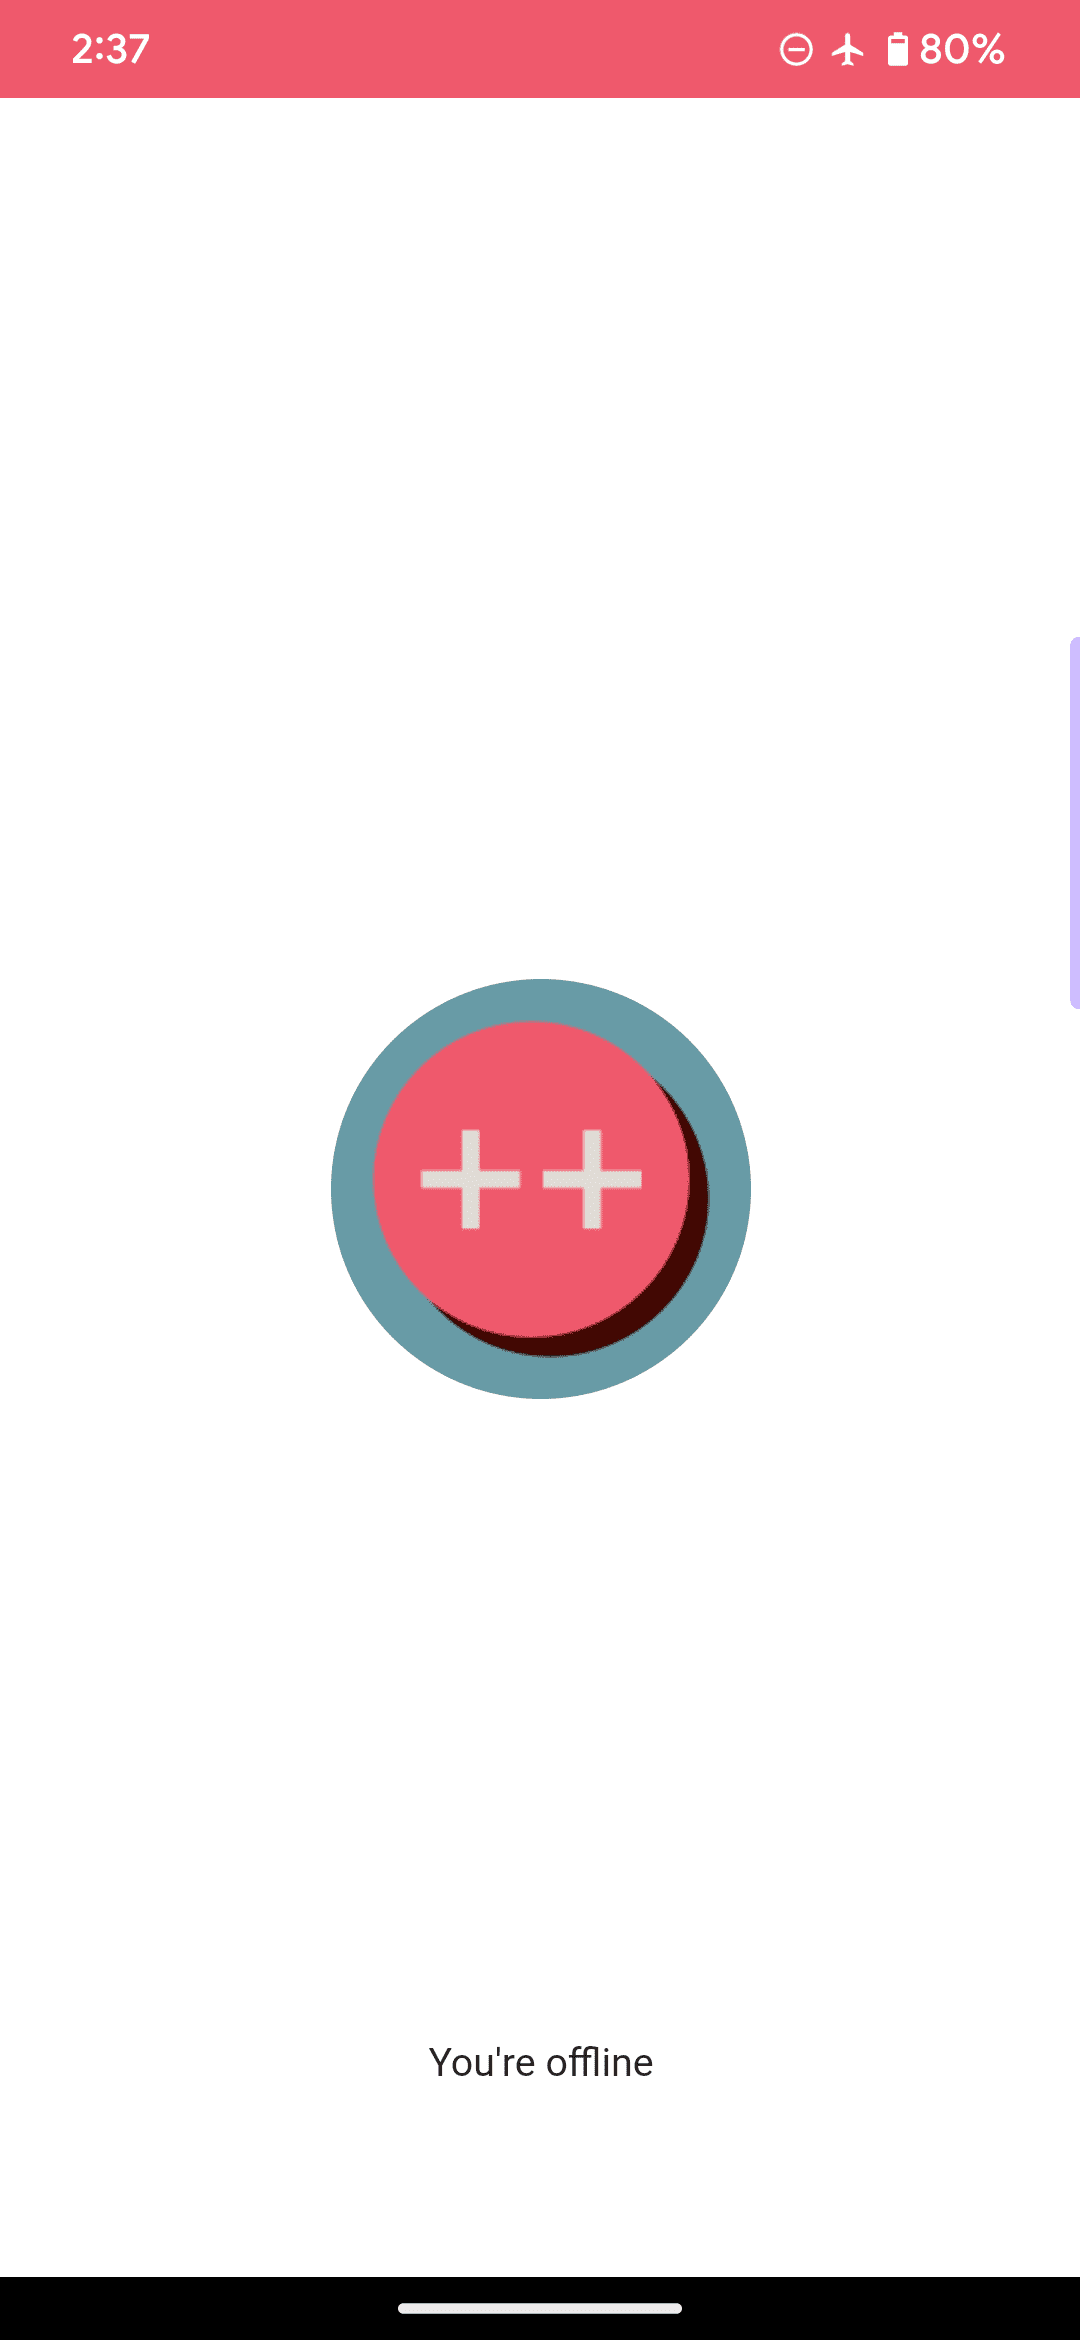 範例網頁應用程式的預設離線網頁，標誌以粉紅色圓圈和兩個加號，並顯示「你目前離線」訊息。